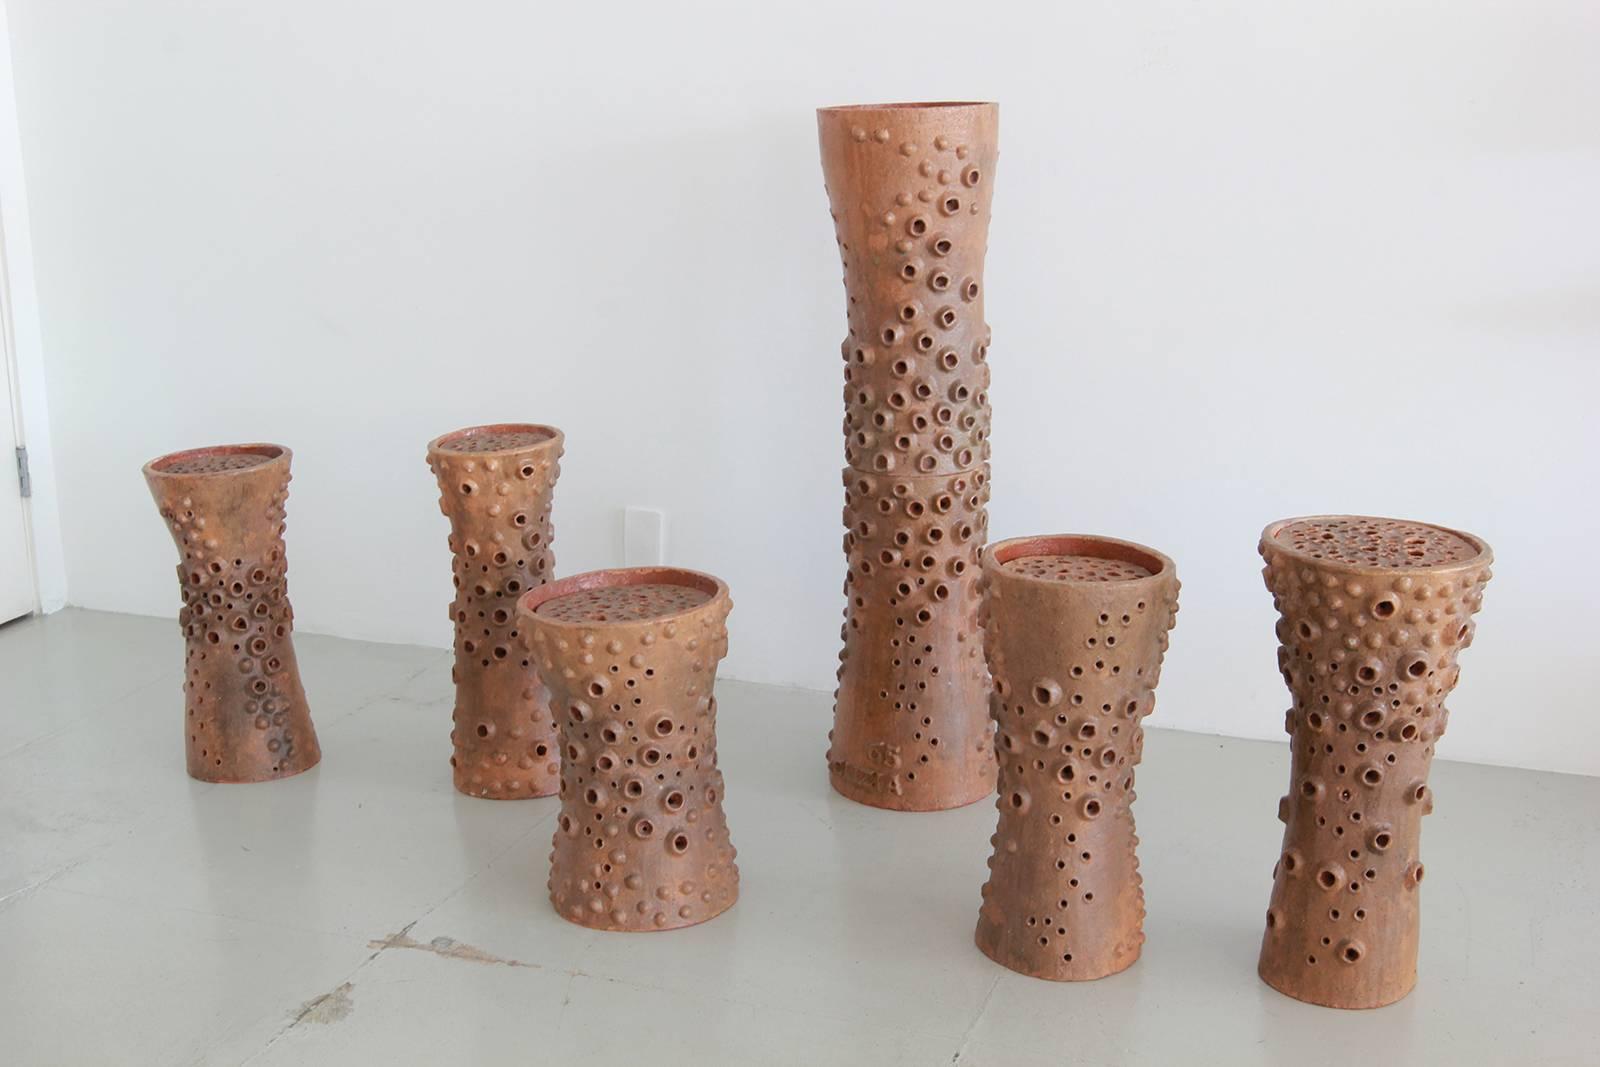 Ceramic Italian Perforated Sculptures